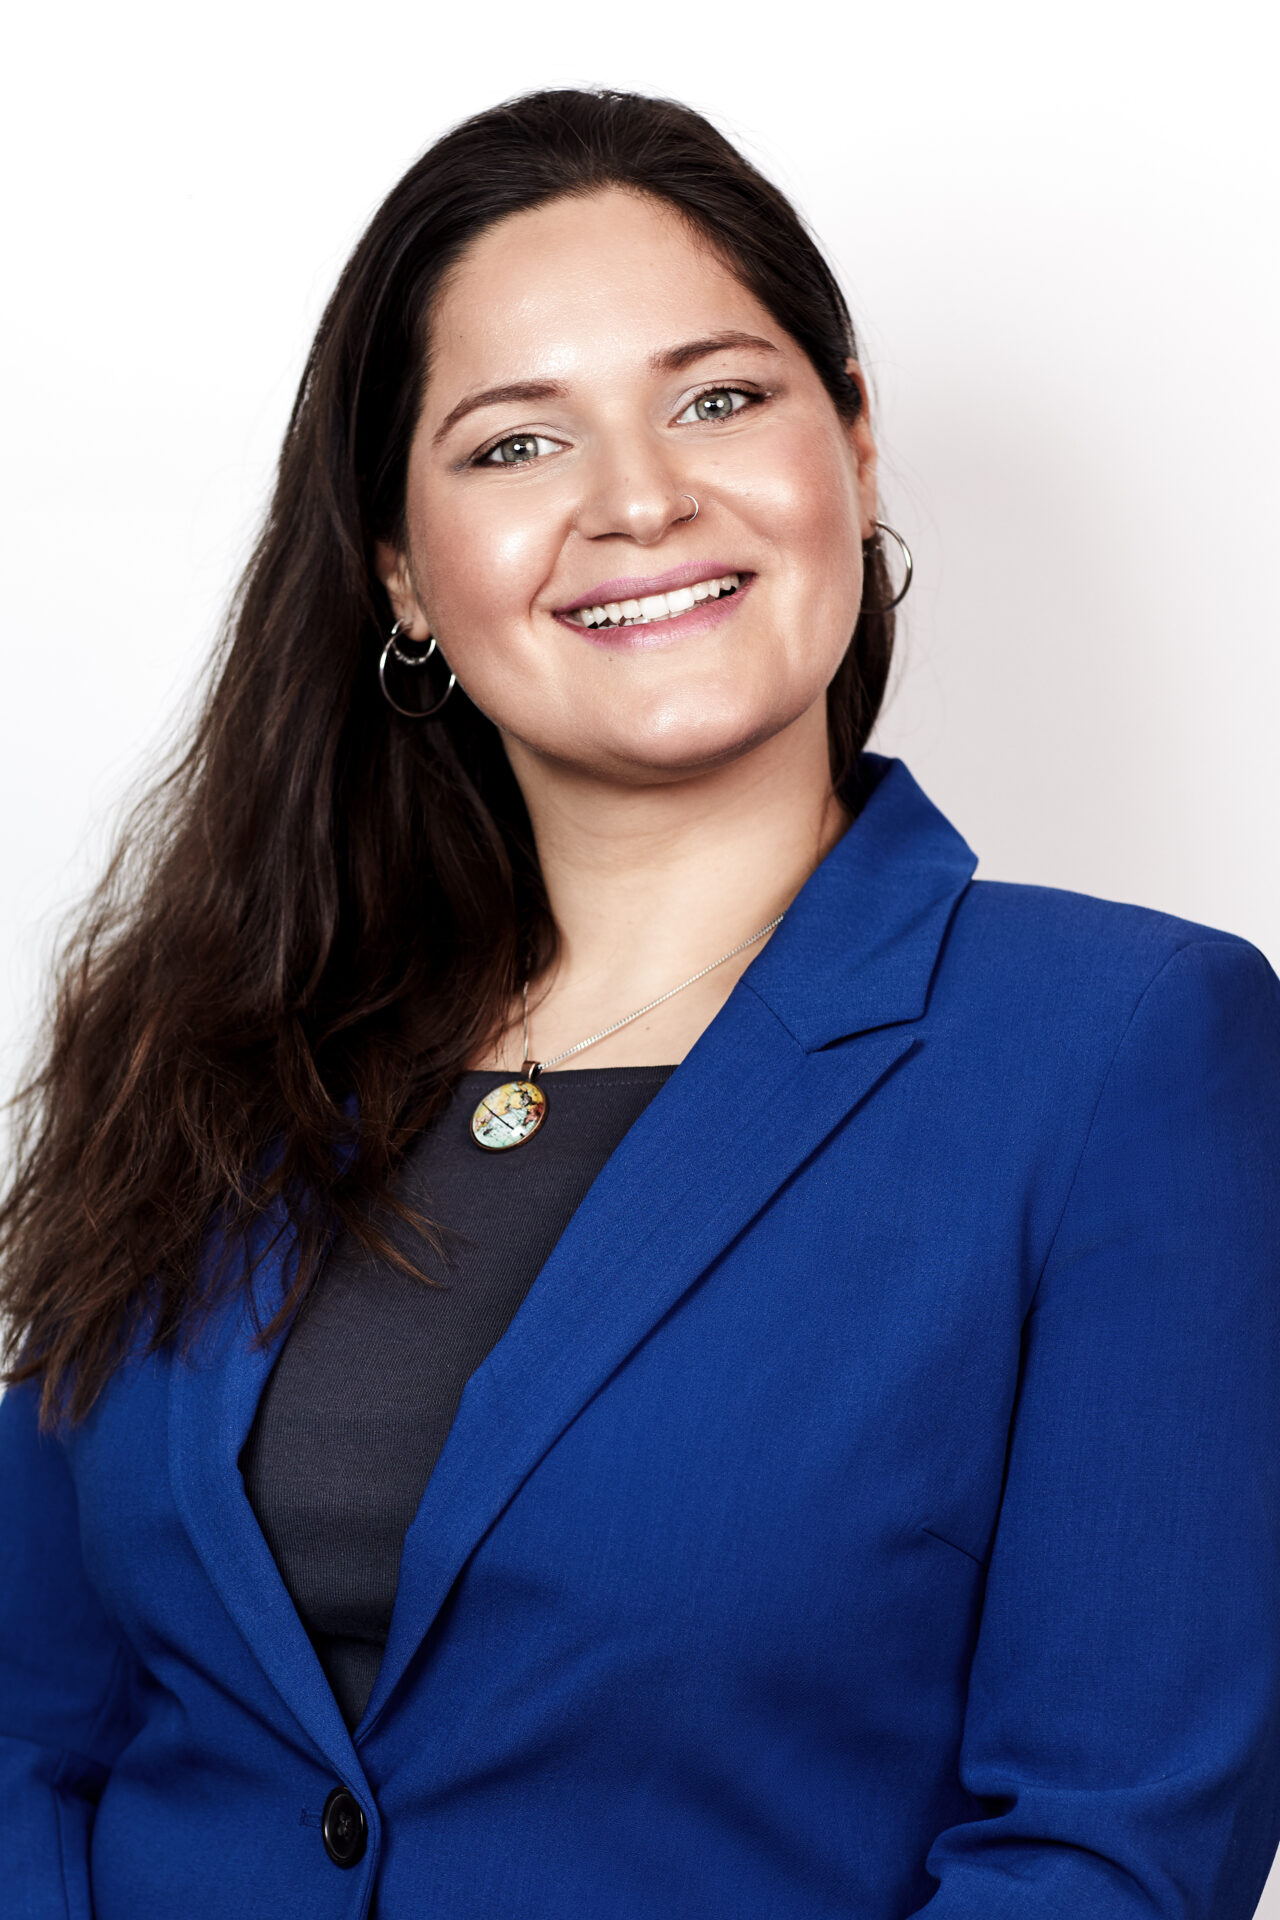 سونیتا شڤارتز - سرپرست / معلم اجتماعی و سازمانی M.A.